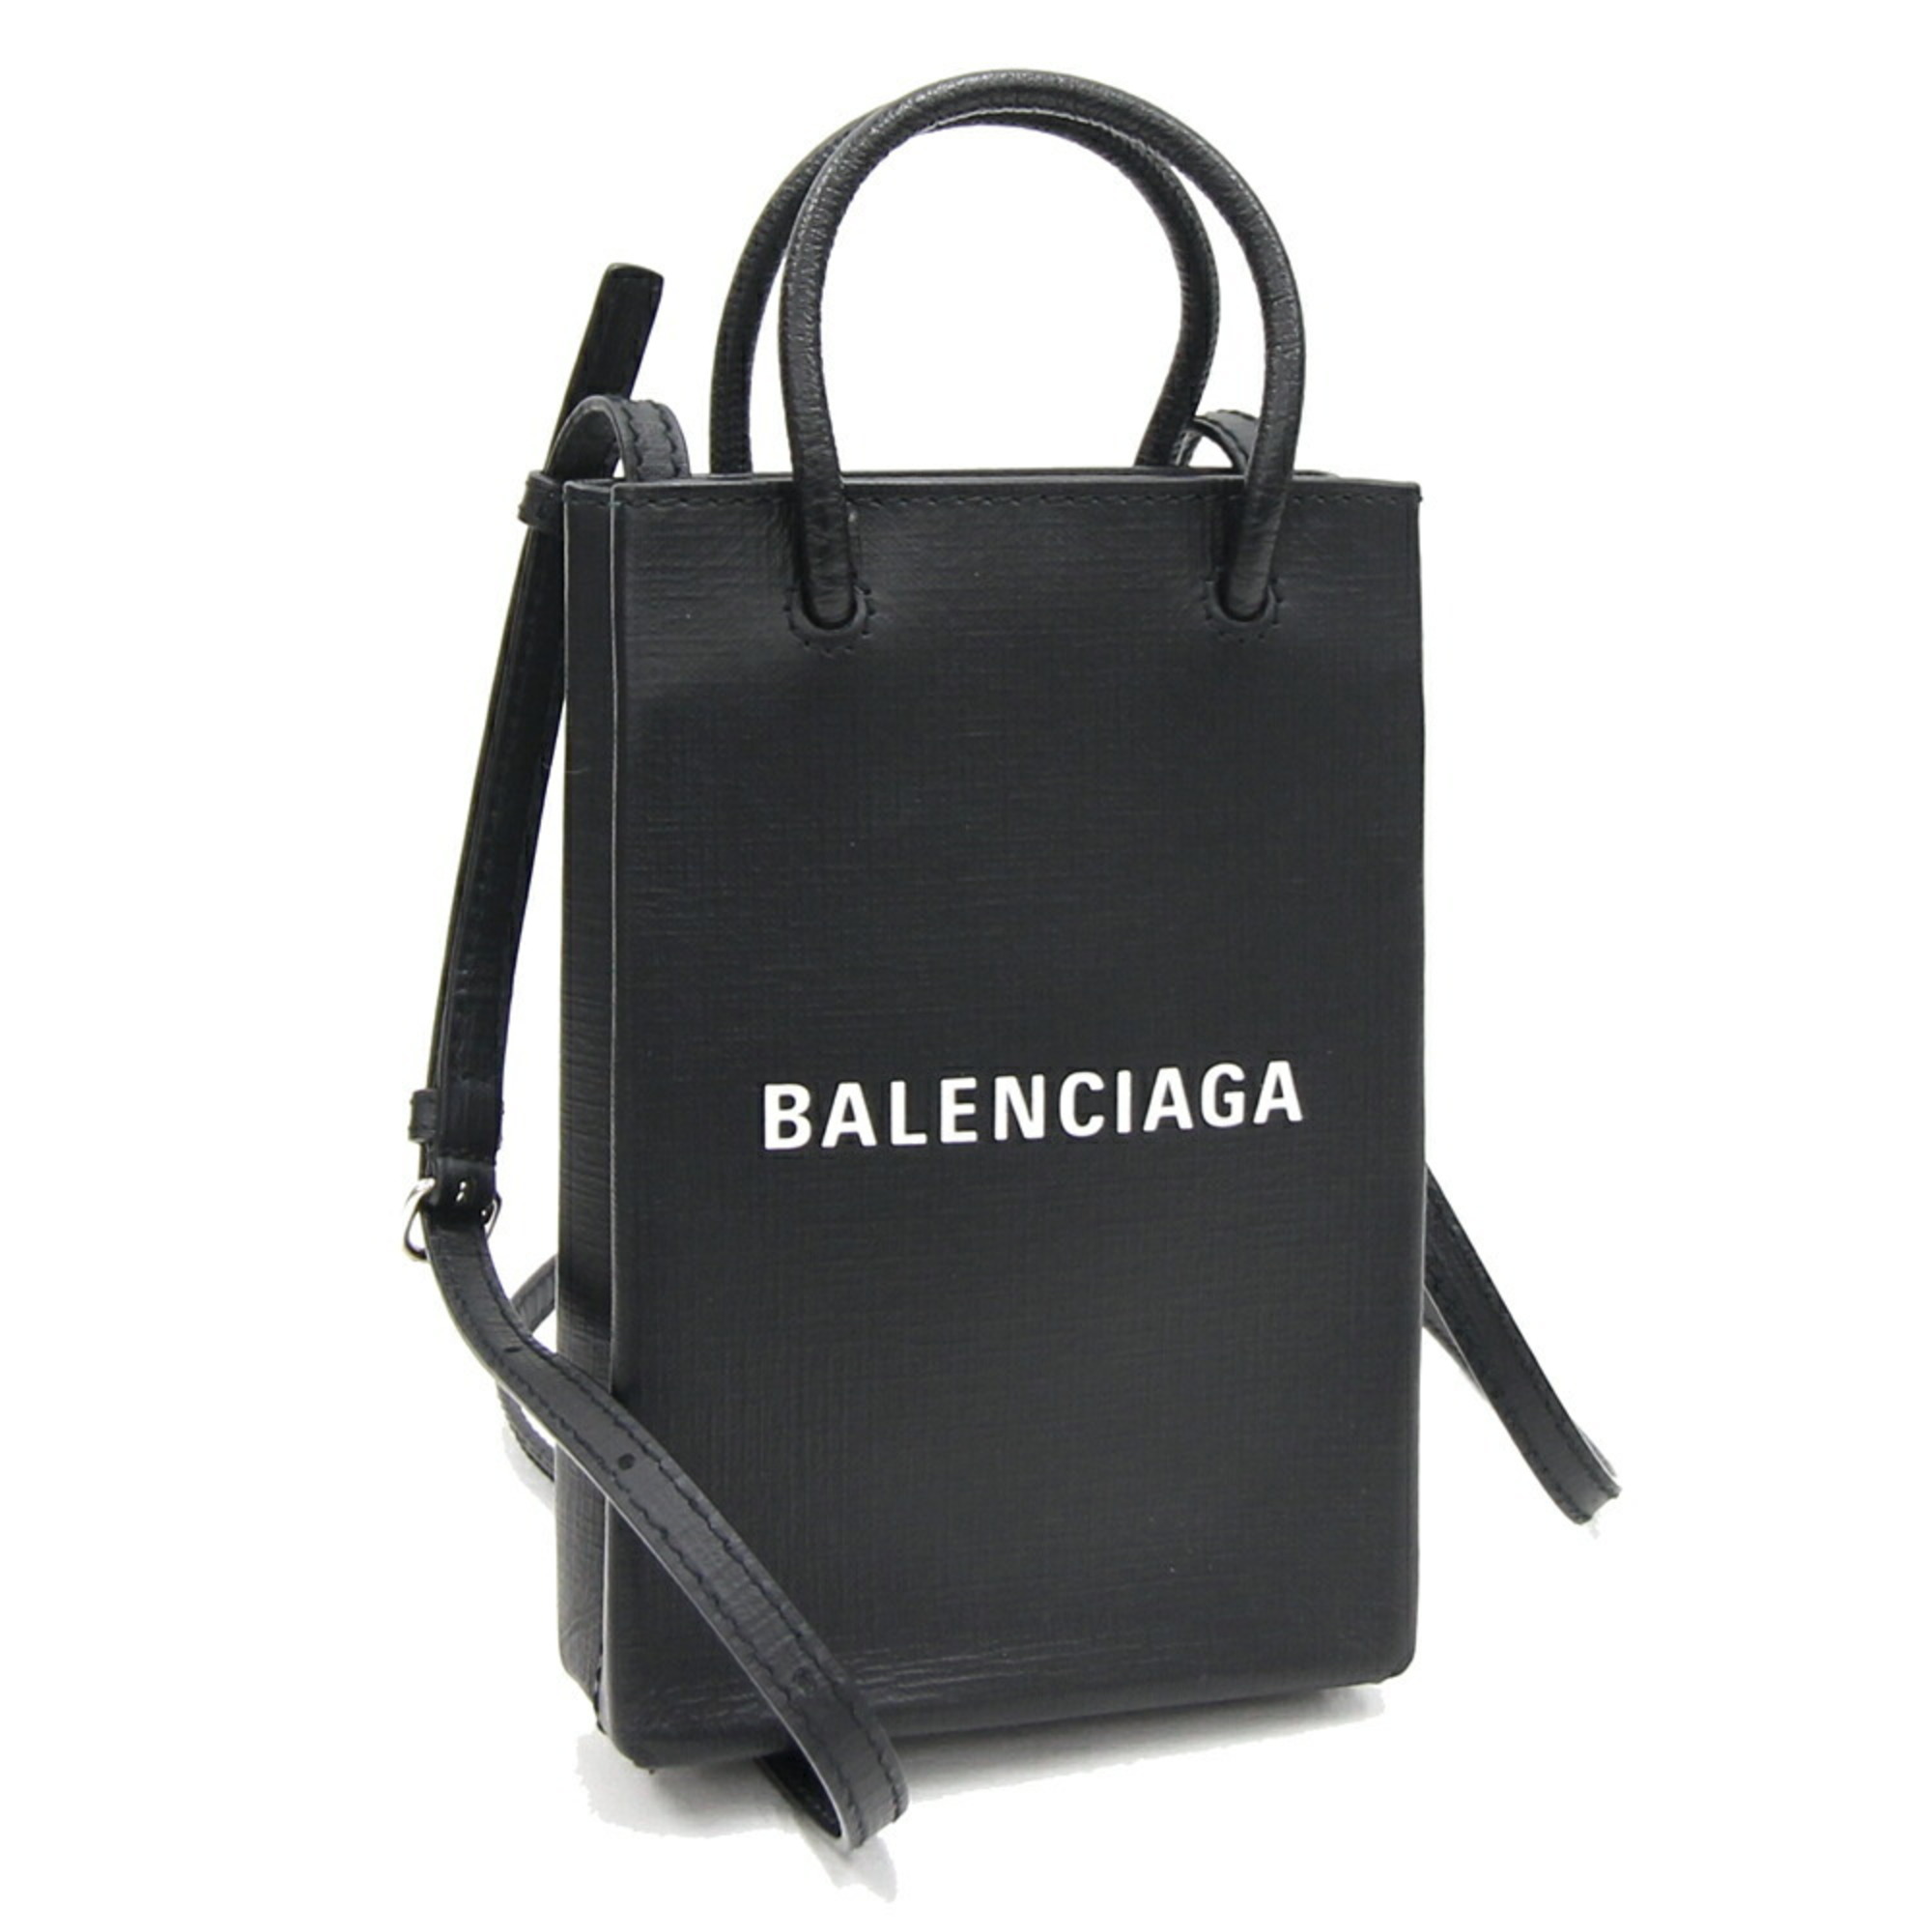 Balenciaga Handbag Phone Holder 593826 Black Calfskin Smartphone Pouch Bag Shopper BALENCIAGA